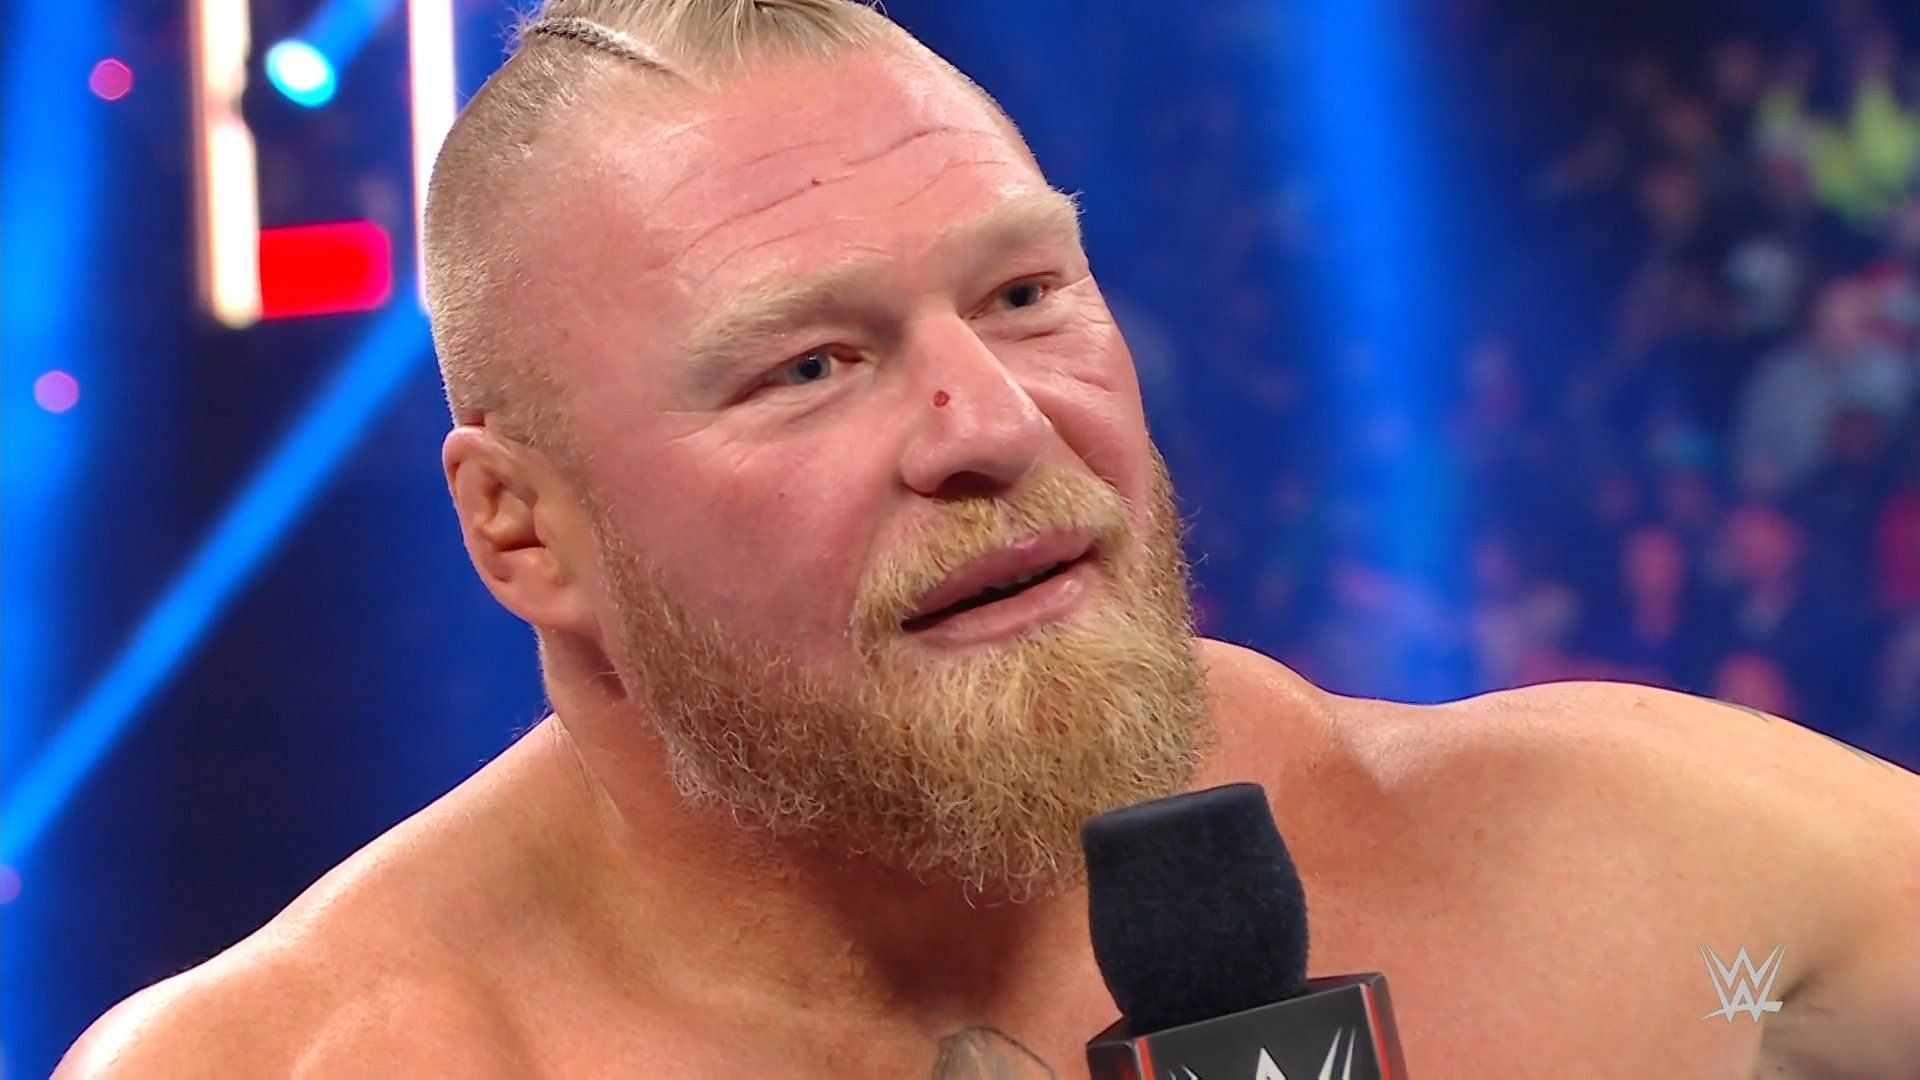 Brock Lesnar is one of wrestling